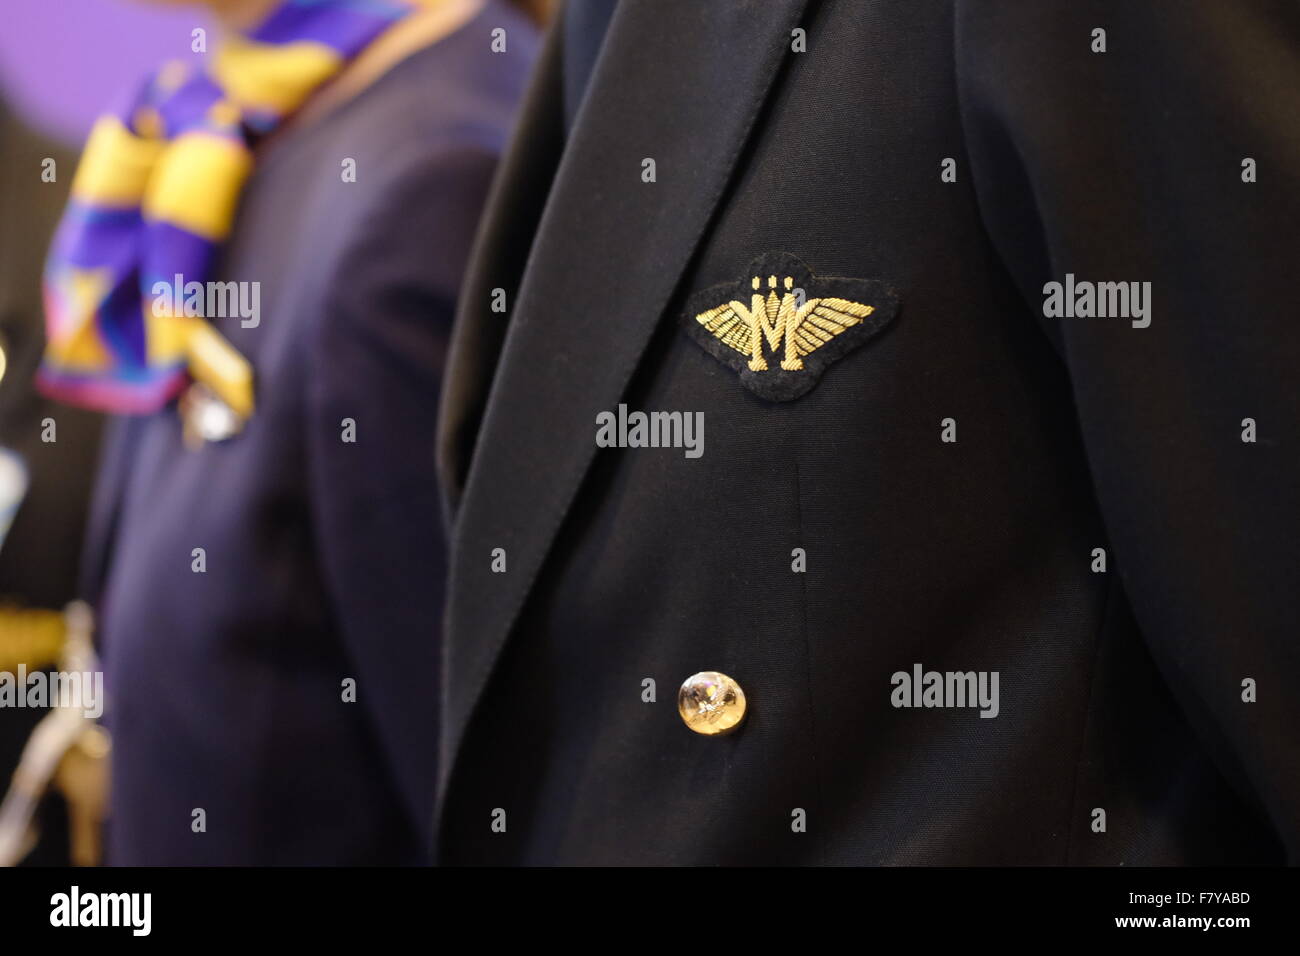 La compagnie aérienne, Monarch ailes cousus sur veste uniforme d'une  hôtesse de l'air Photo Stock - Alamy